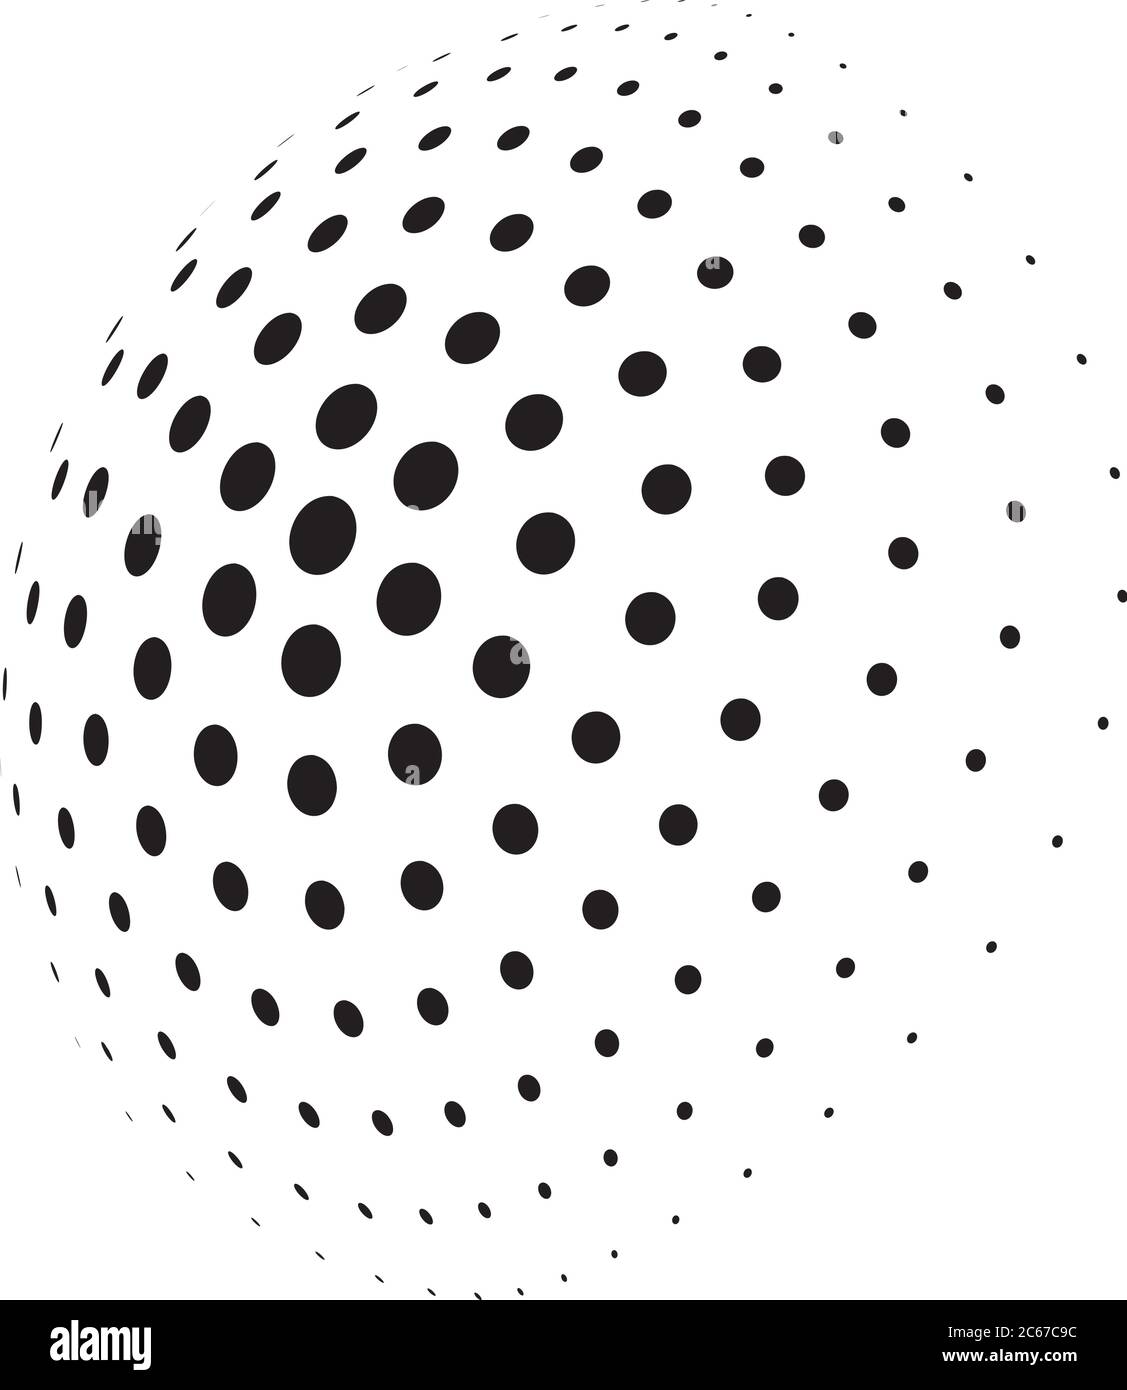 Sphère 3D demi-teinte abstraite de points de cercle dans une disposition radiale. Élément vectoriel simple et moderne en noir et blanc. Illustration de Vecteur